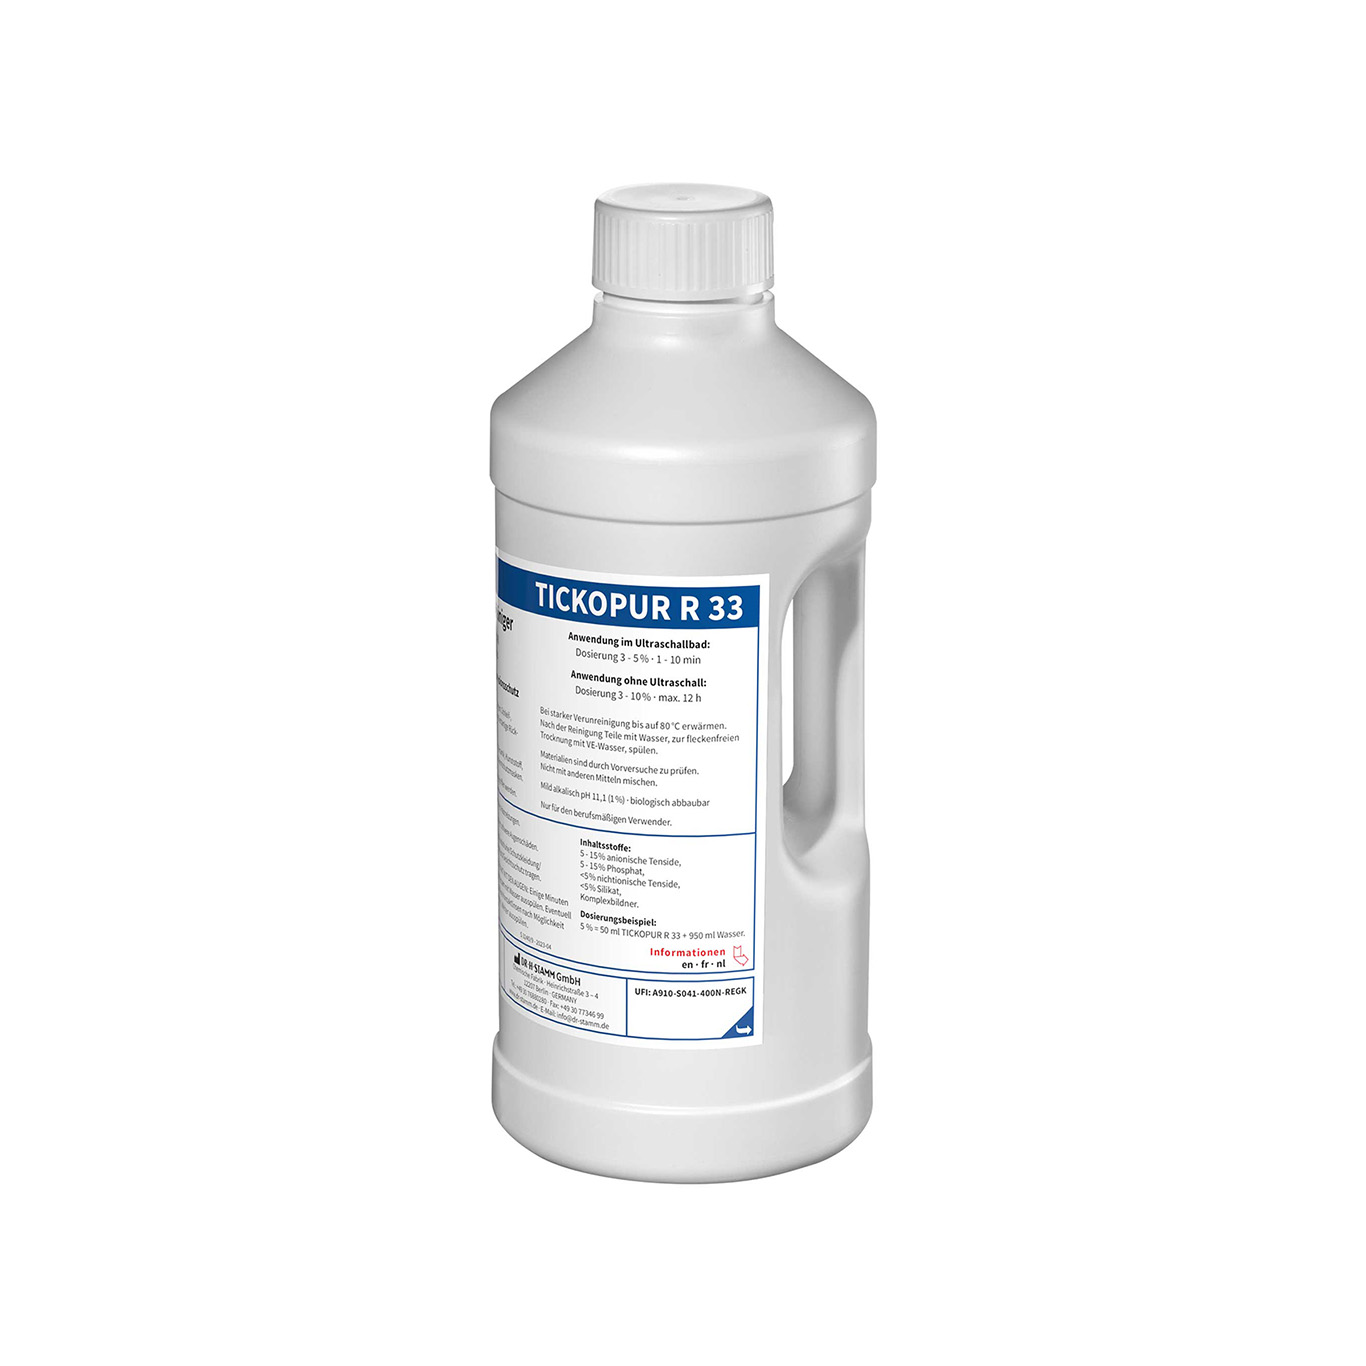 Tickopur R33 liquide pour nettoyeur à ultrason - Wemmel Tools